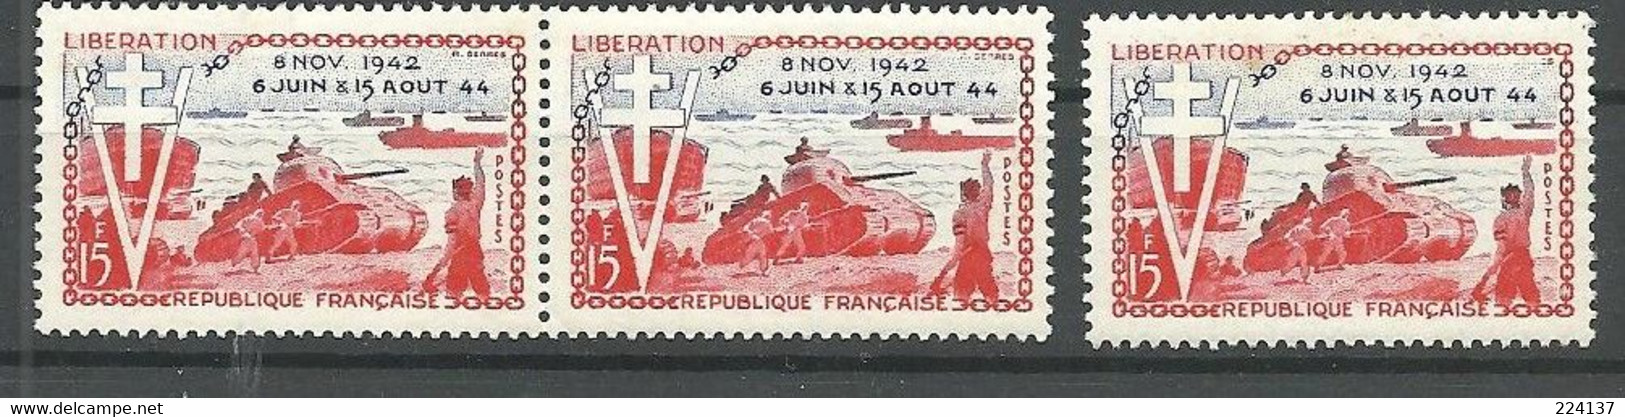 N° 983 2 VARIETES - Unused Stamps